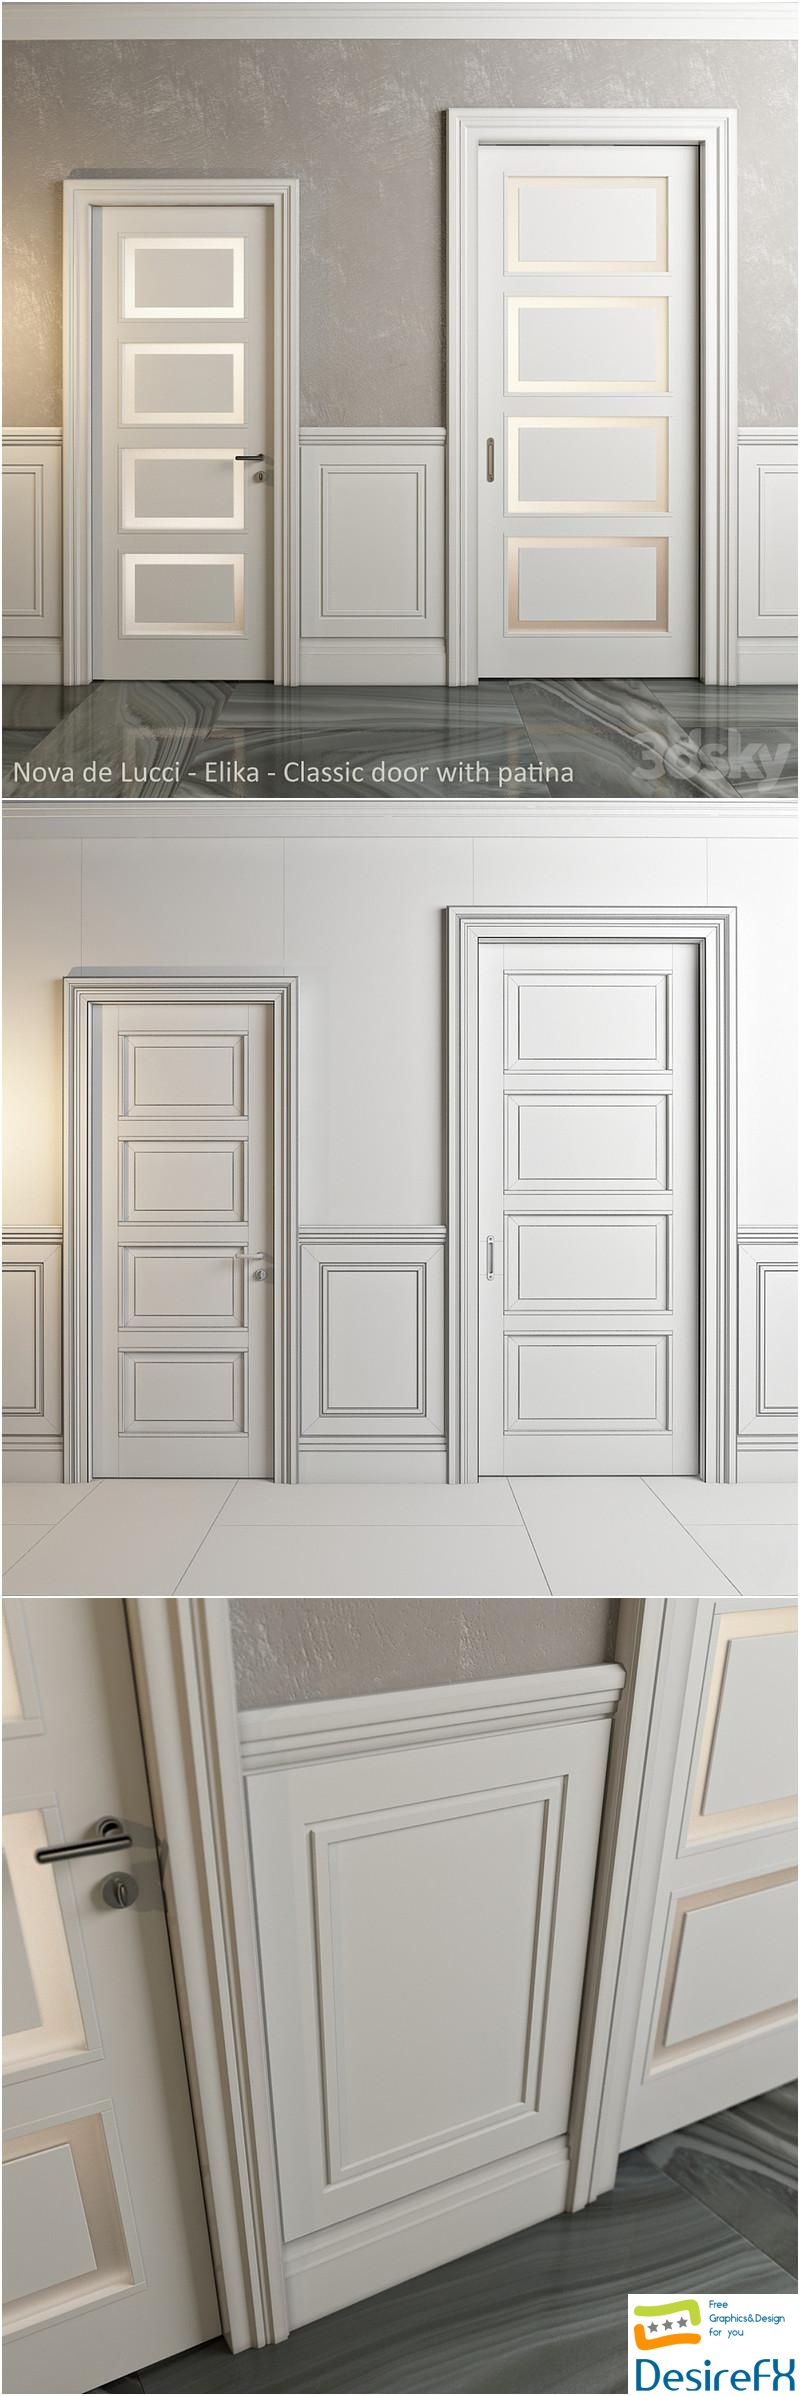 Classic doors and panels - Nova de Lucci - Elika 3D Model